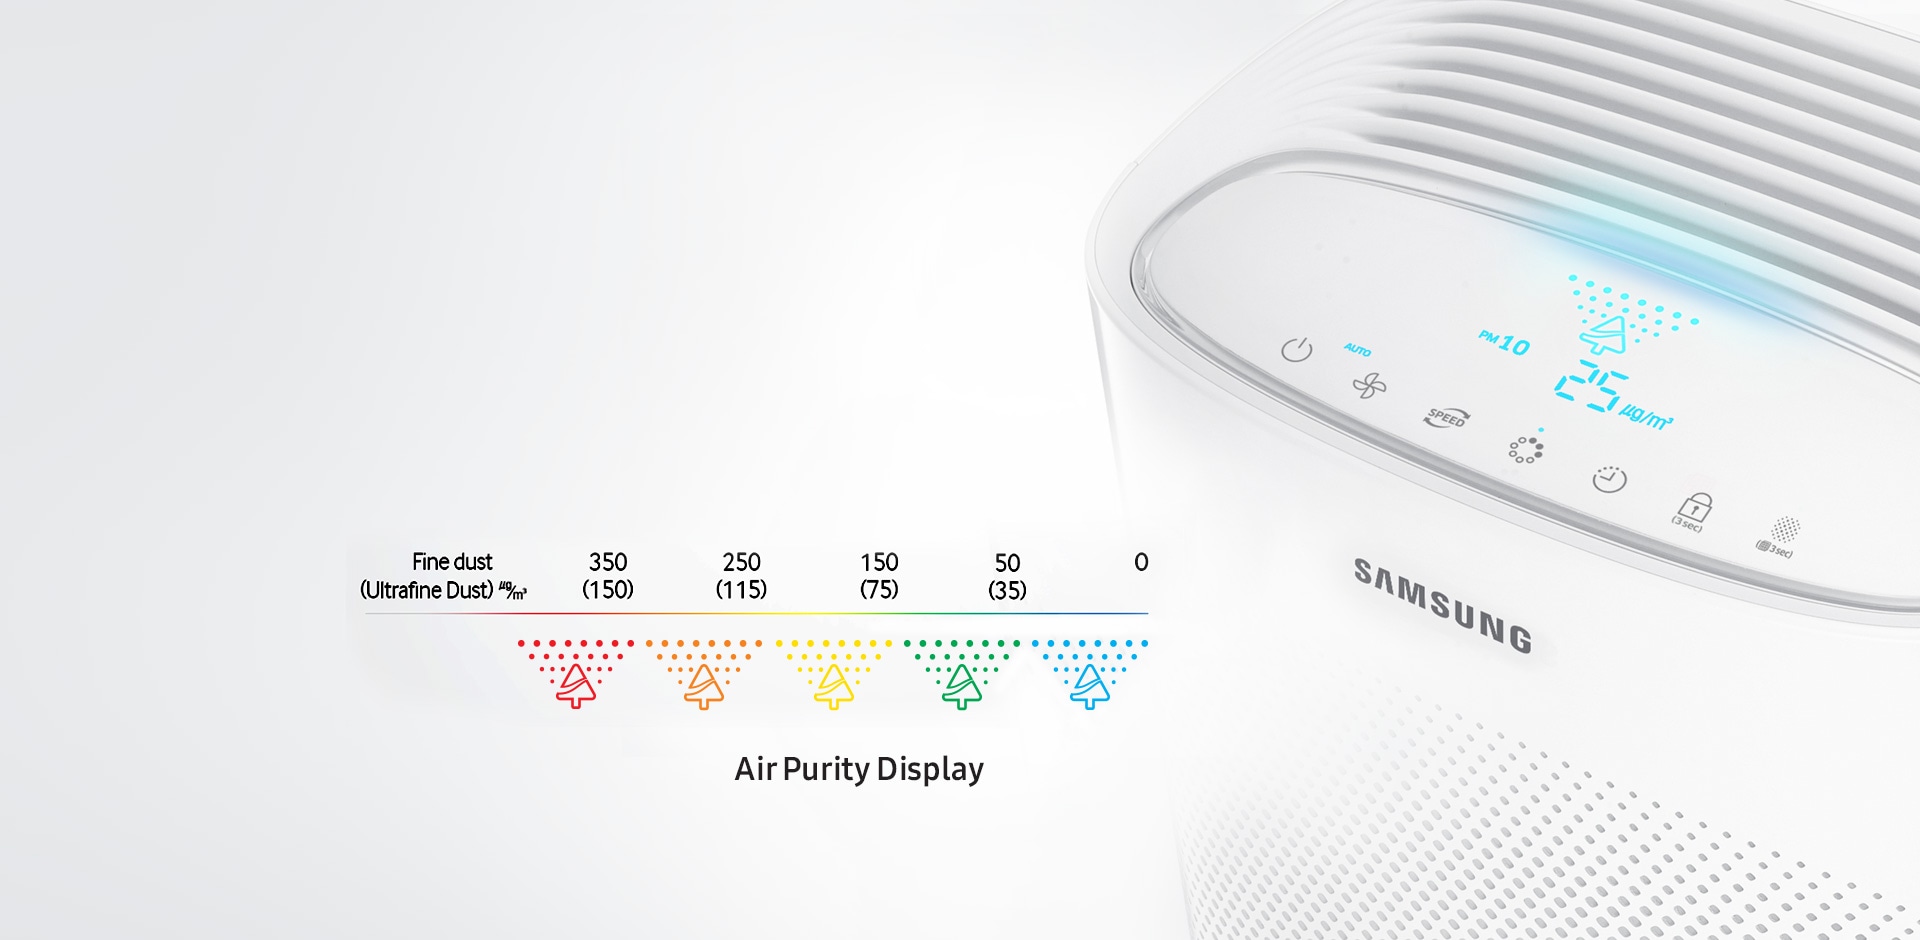 Samsung Air Purifier- Air Purity Display